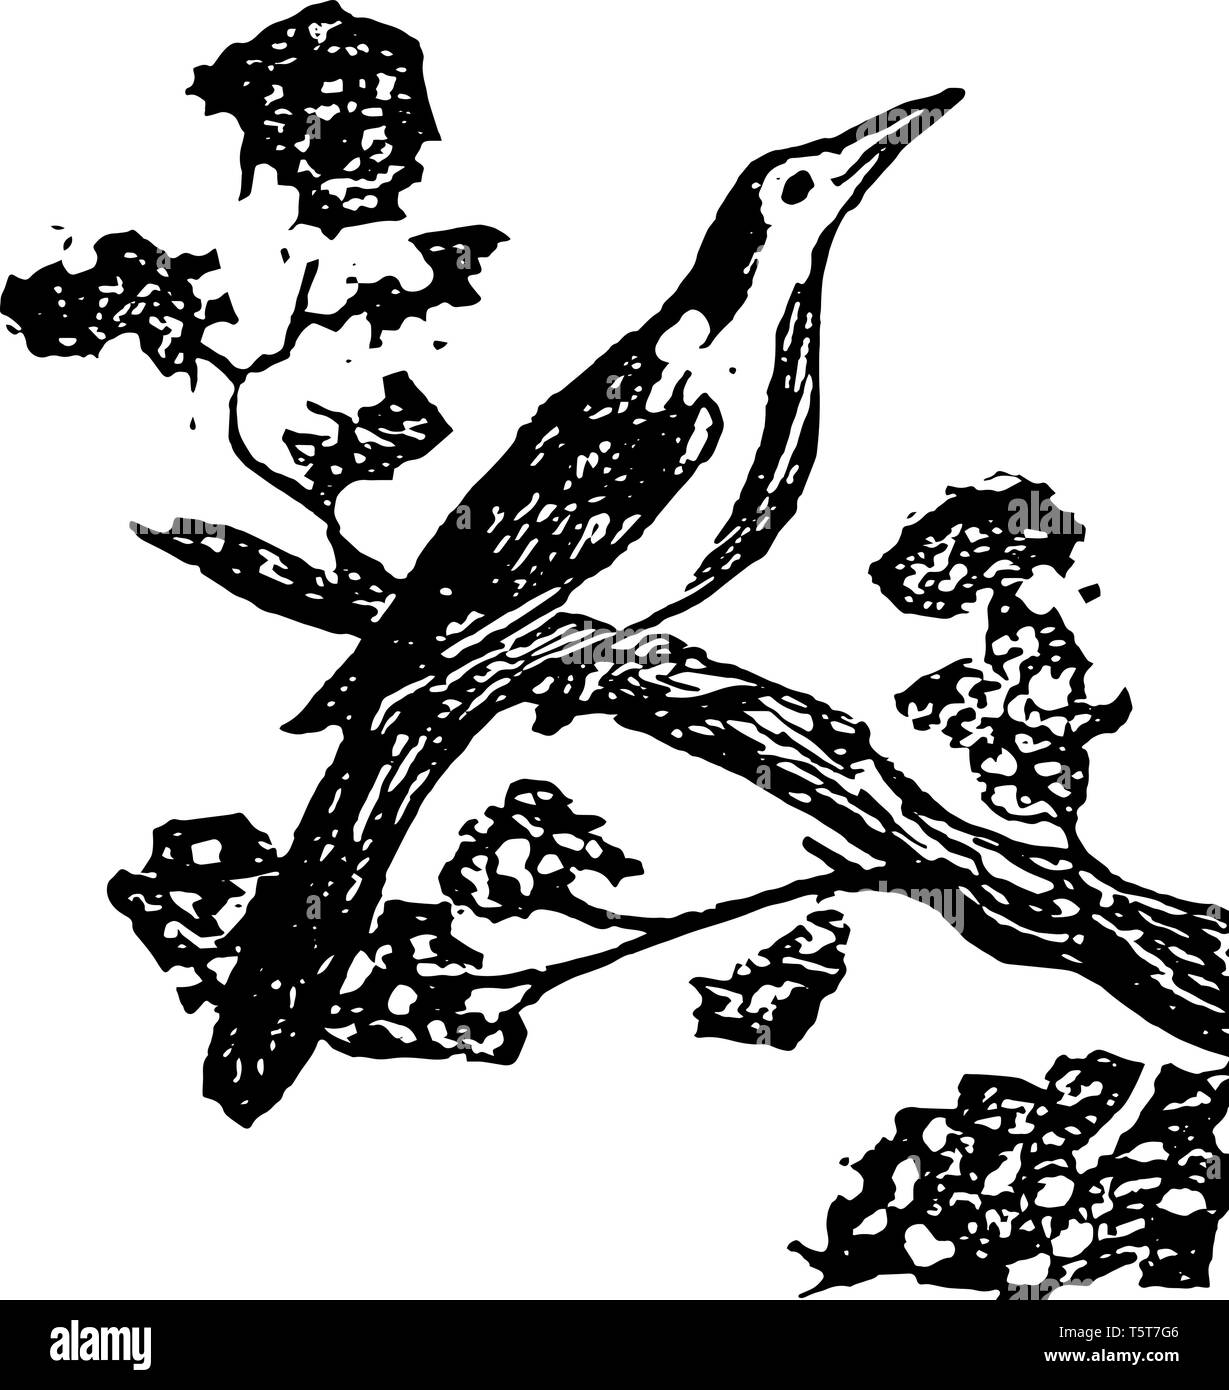 Oiseau moqueur est un passereau de la famille des Mimidae connu pour imiter les chants d'autres oiseaux et des sons vintage le schéma. Illustration de Vecteur